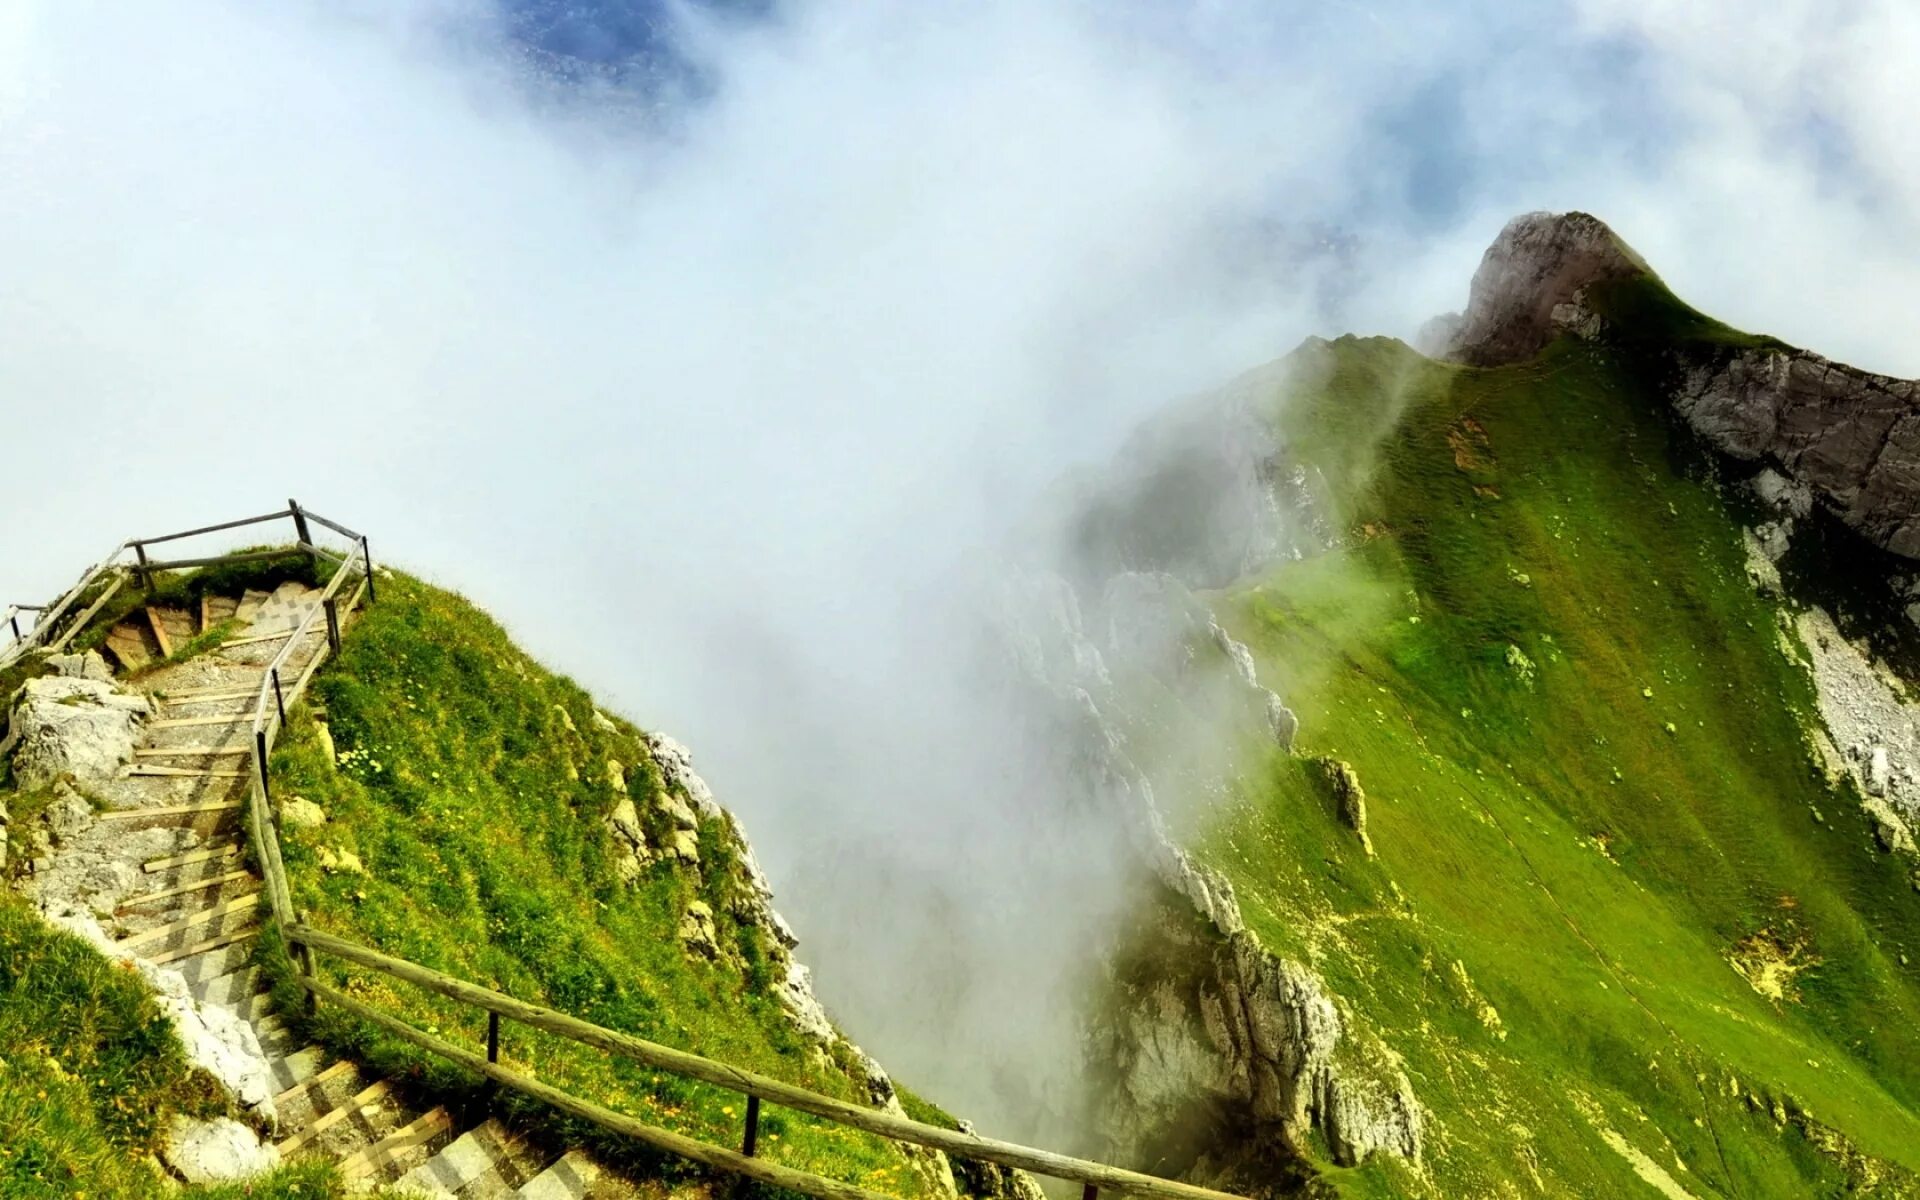 Мачу Пикчу лестница. Спуск с горы Мачу-Пикчу. Мачу Пикчу парящая лестница. Лестница на вершину горы. Везде работа на горах в долинах рощах